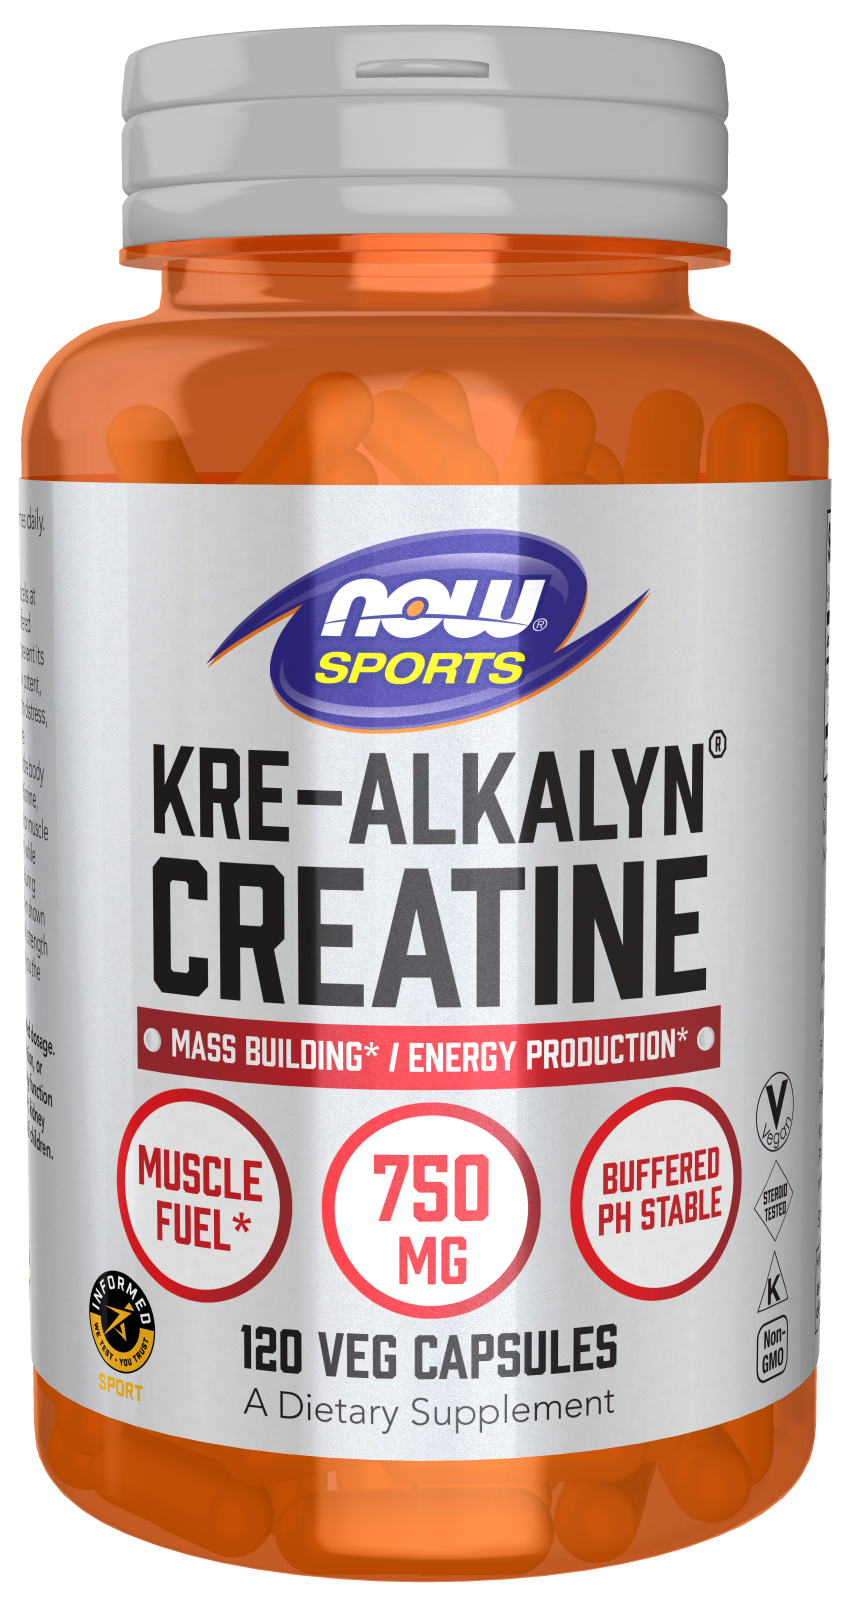 Kre-Alkalyn® Creatine - 120 Veg Capsules Bottle Front